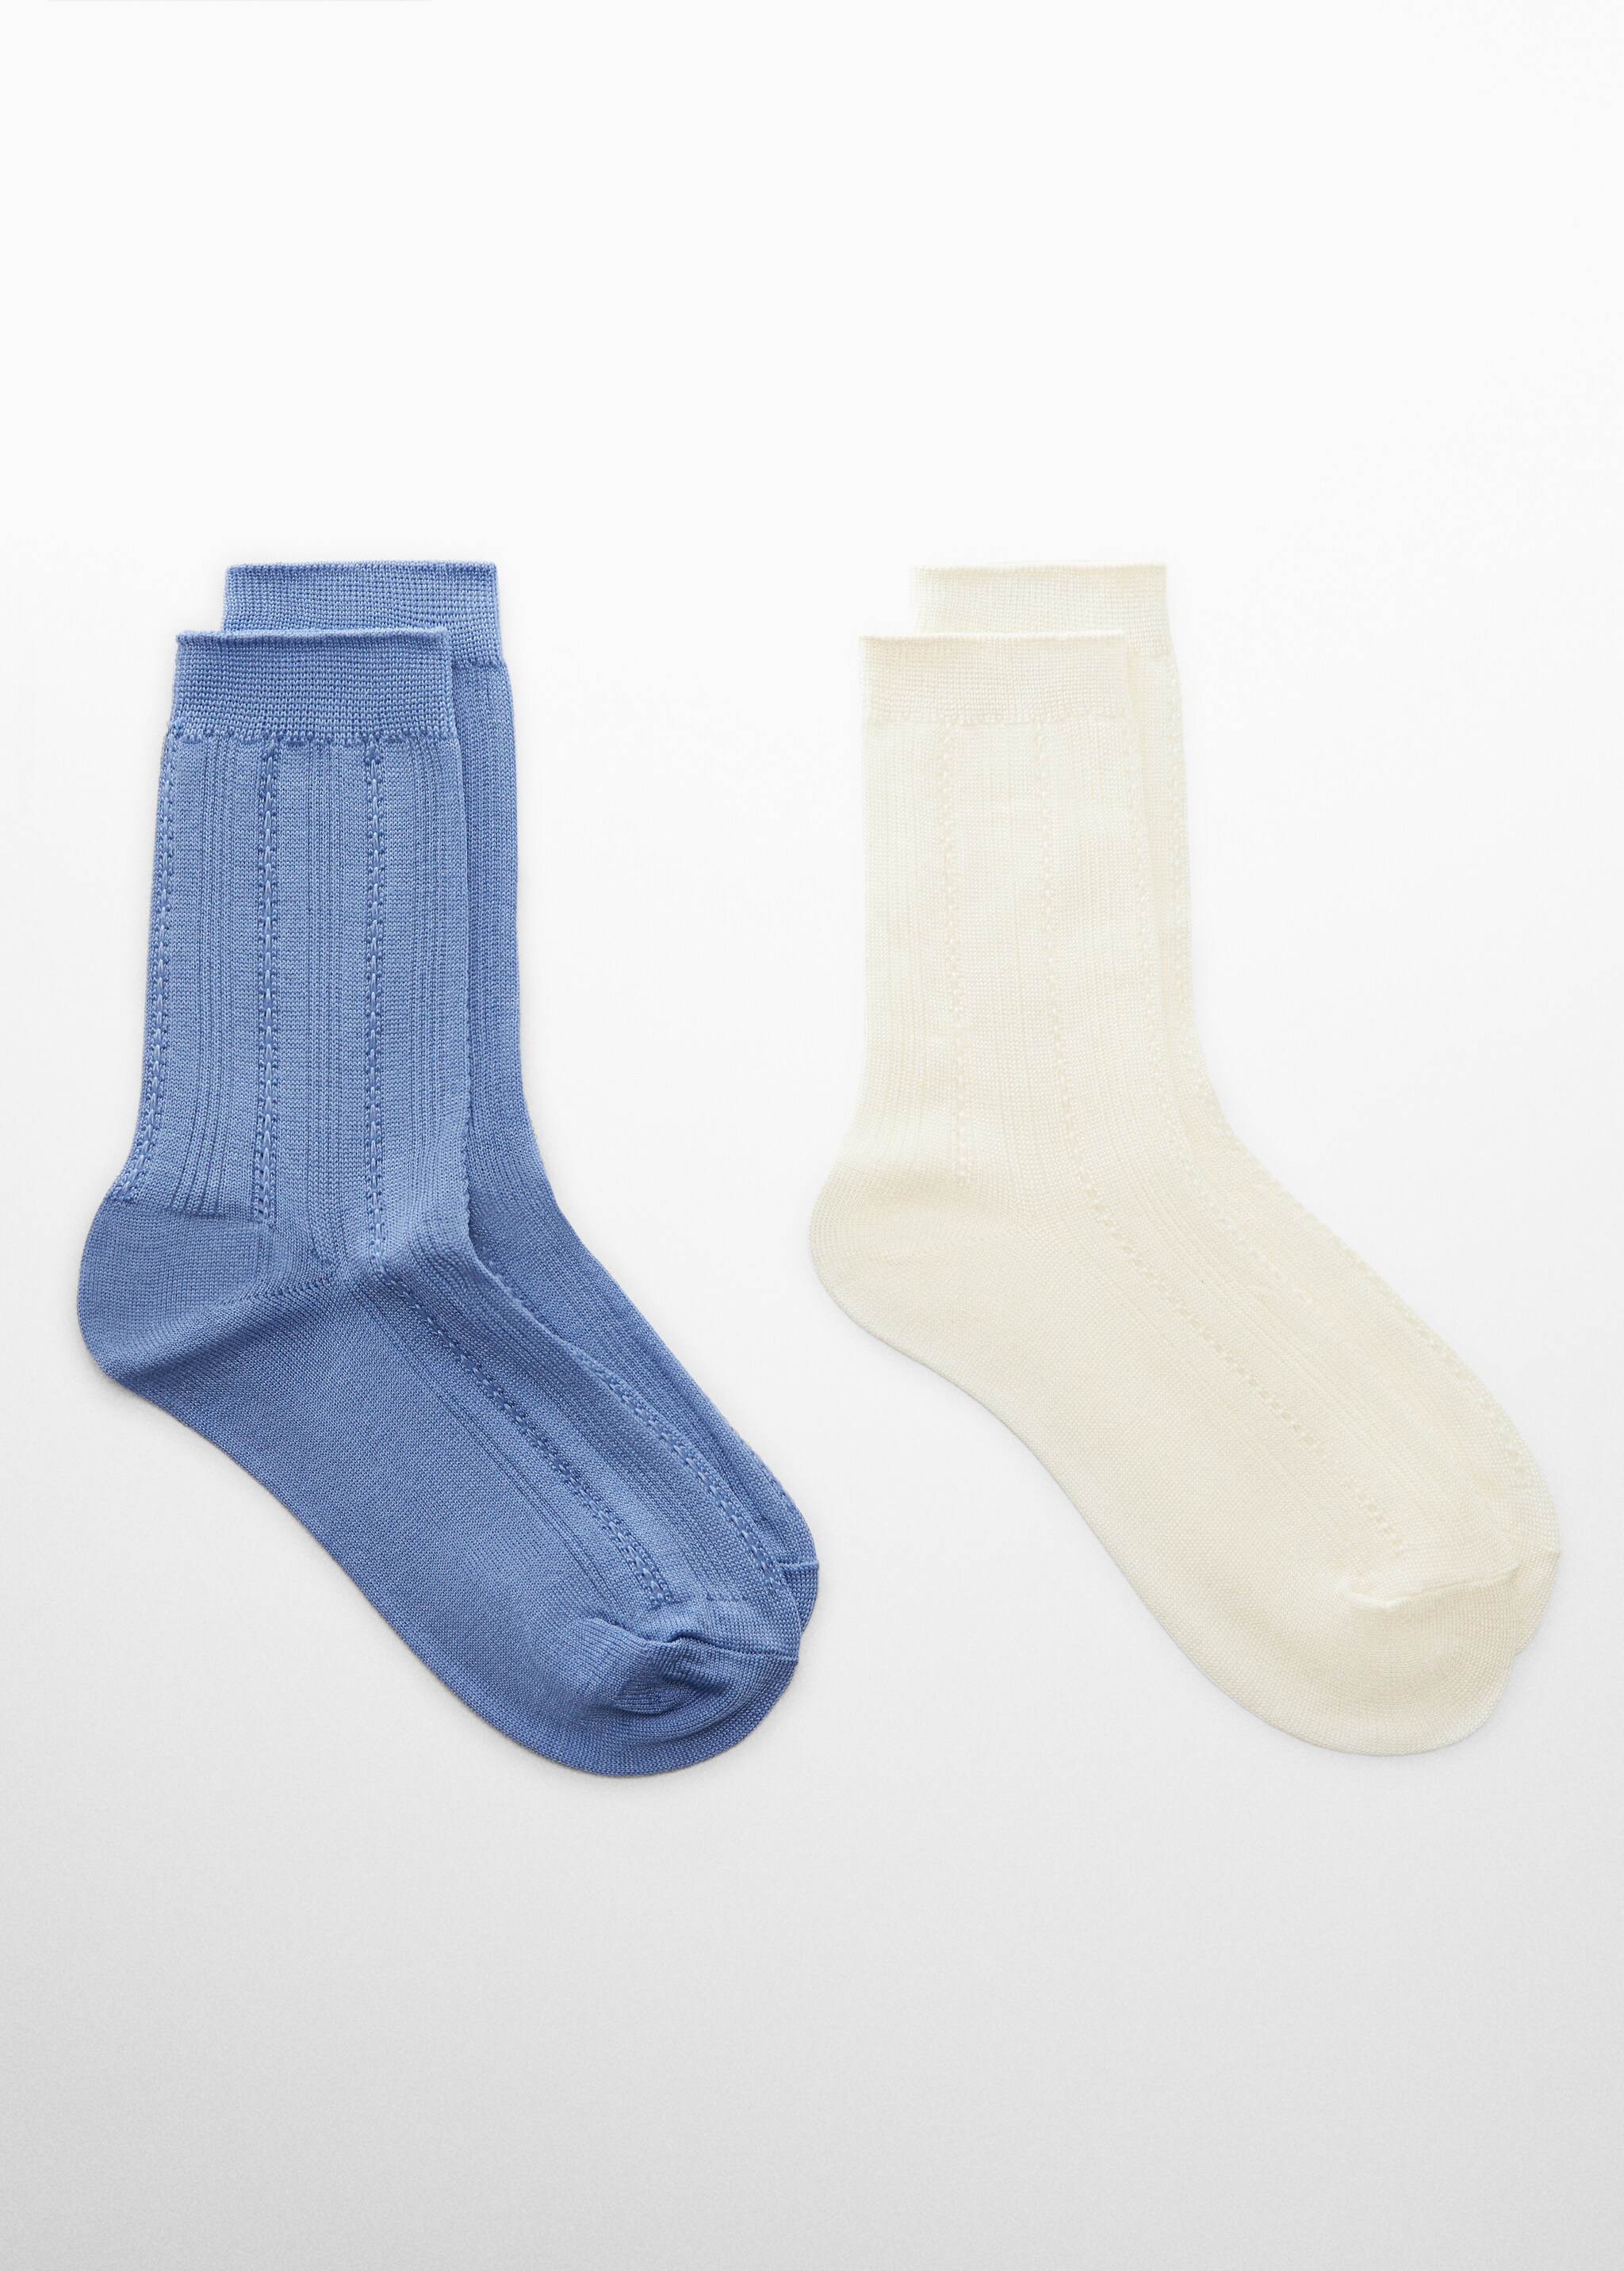 Pack 2 calzini maglia - Articolo senza modello